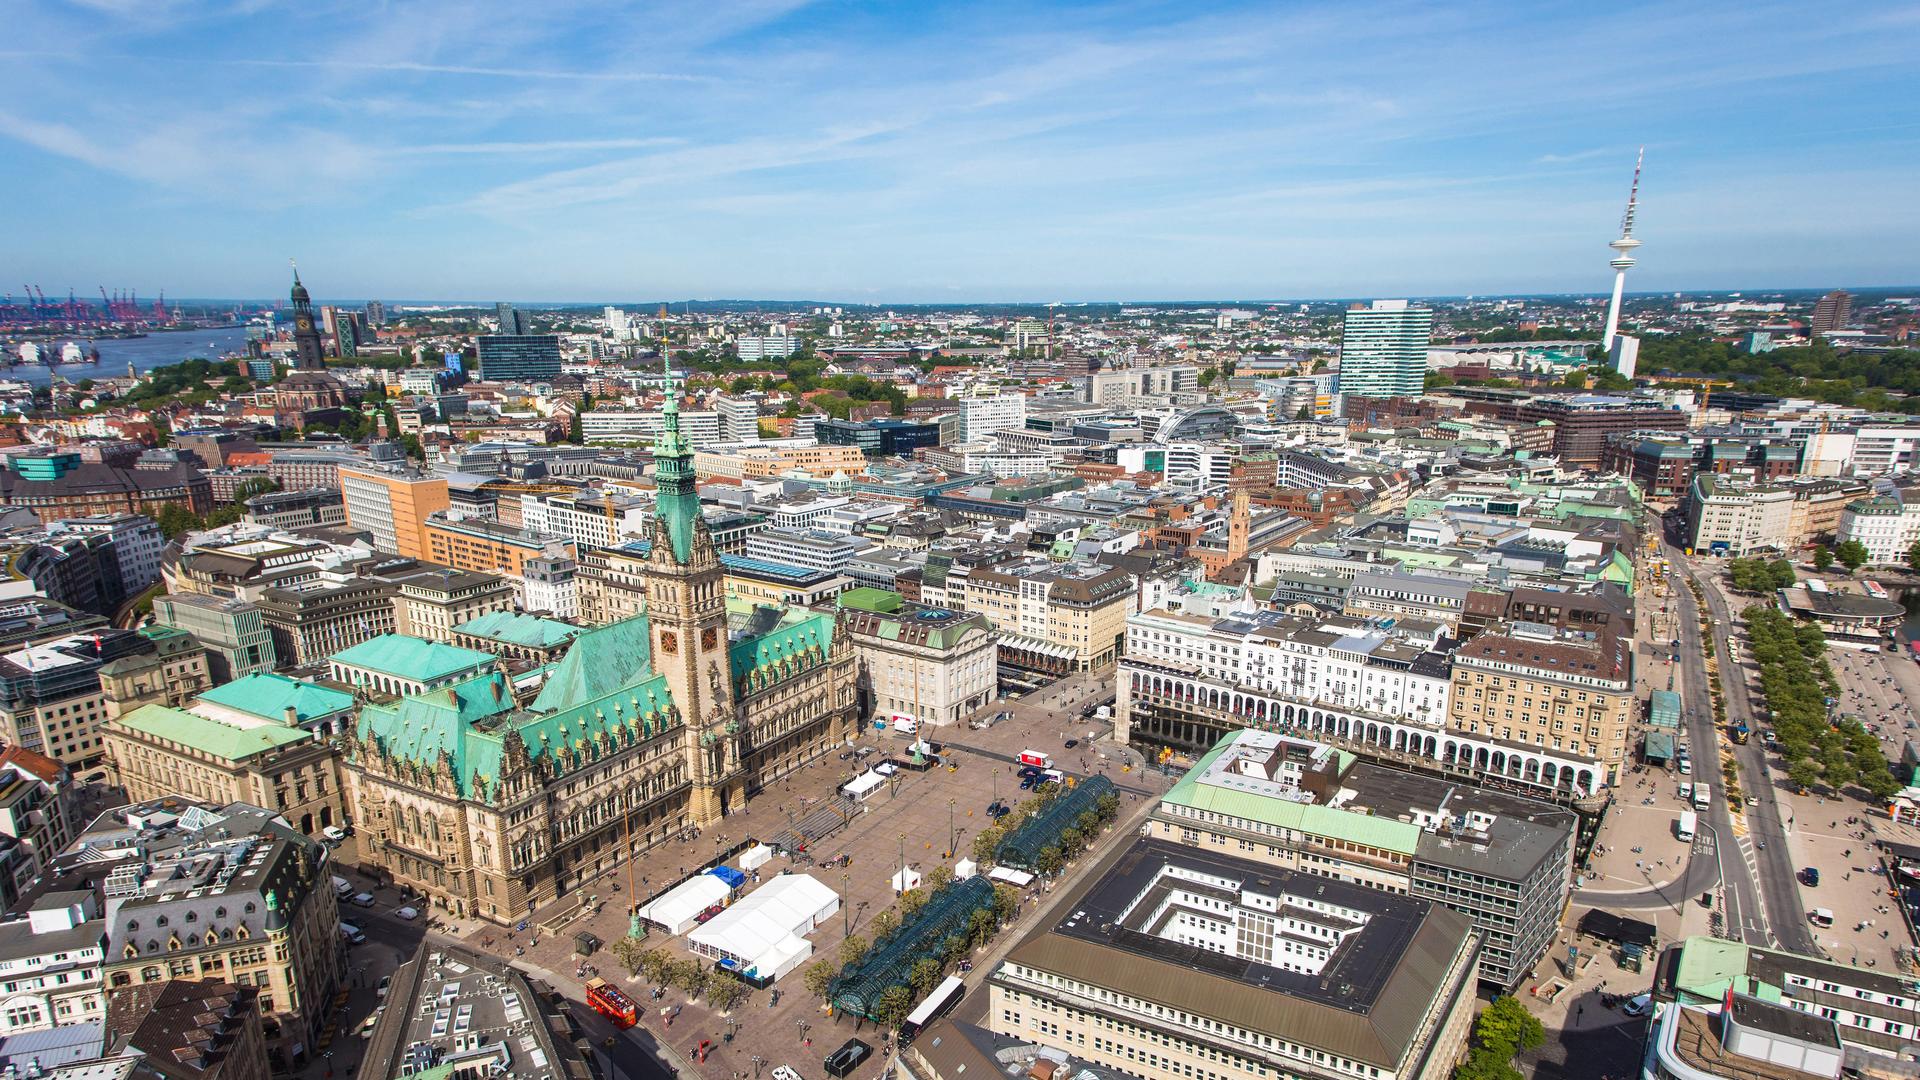 Paoramablick auf die Dächer Hamburgs vor blauem Himmel